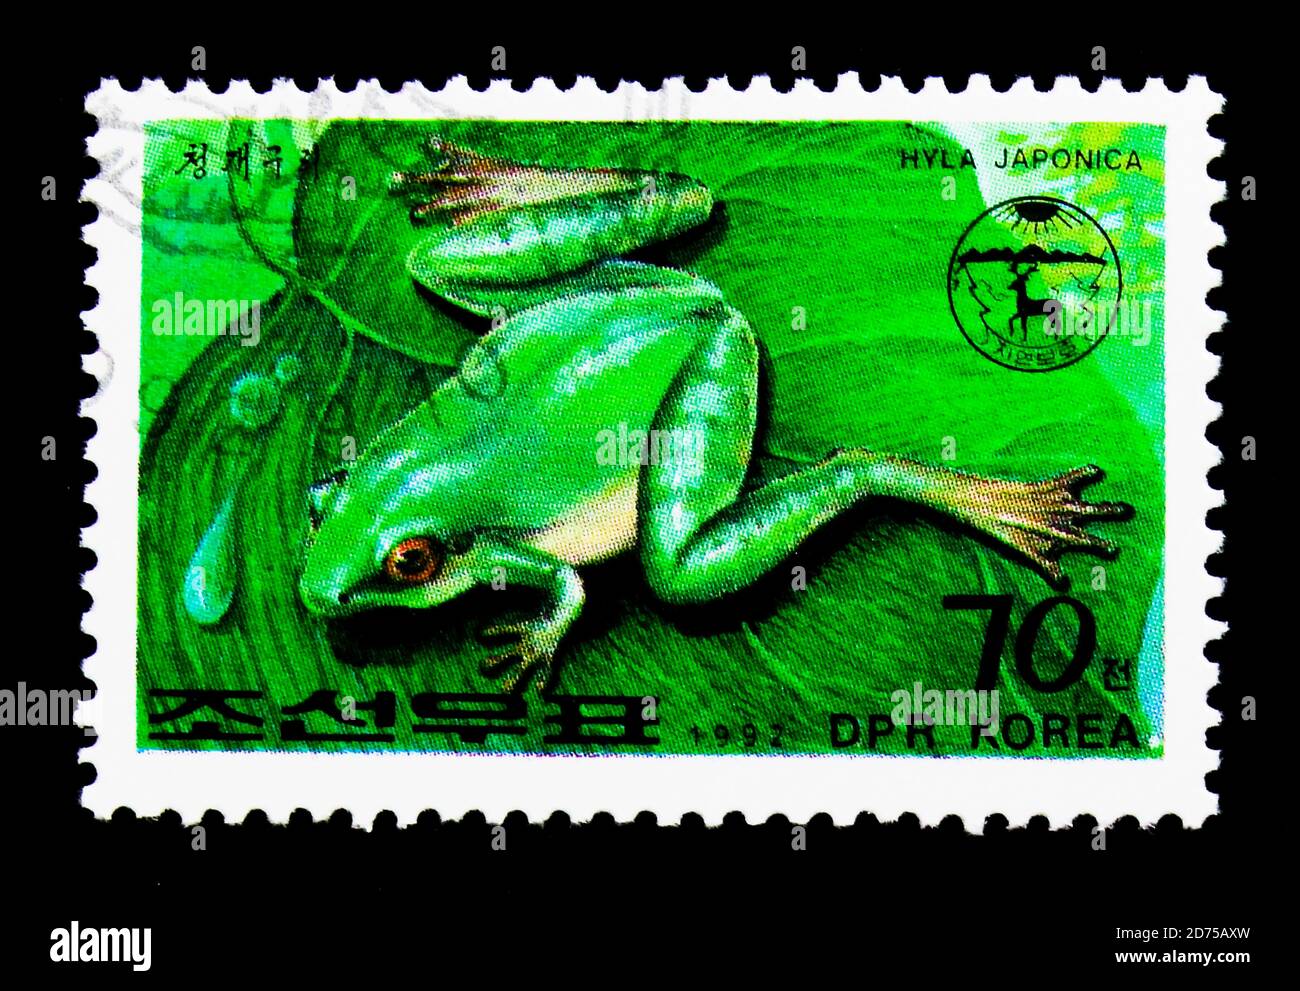 MOSCOU, RUSSIE - 25 NOVEMBRE 2017 : un timbre imprimé en république populaire démocratique de Corée montre la grenouille japonaise (Hyla japonica), série, vers 19 Banque D'Images